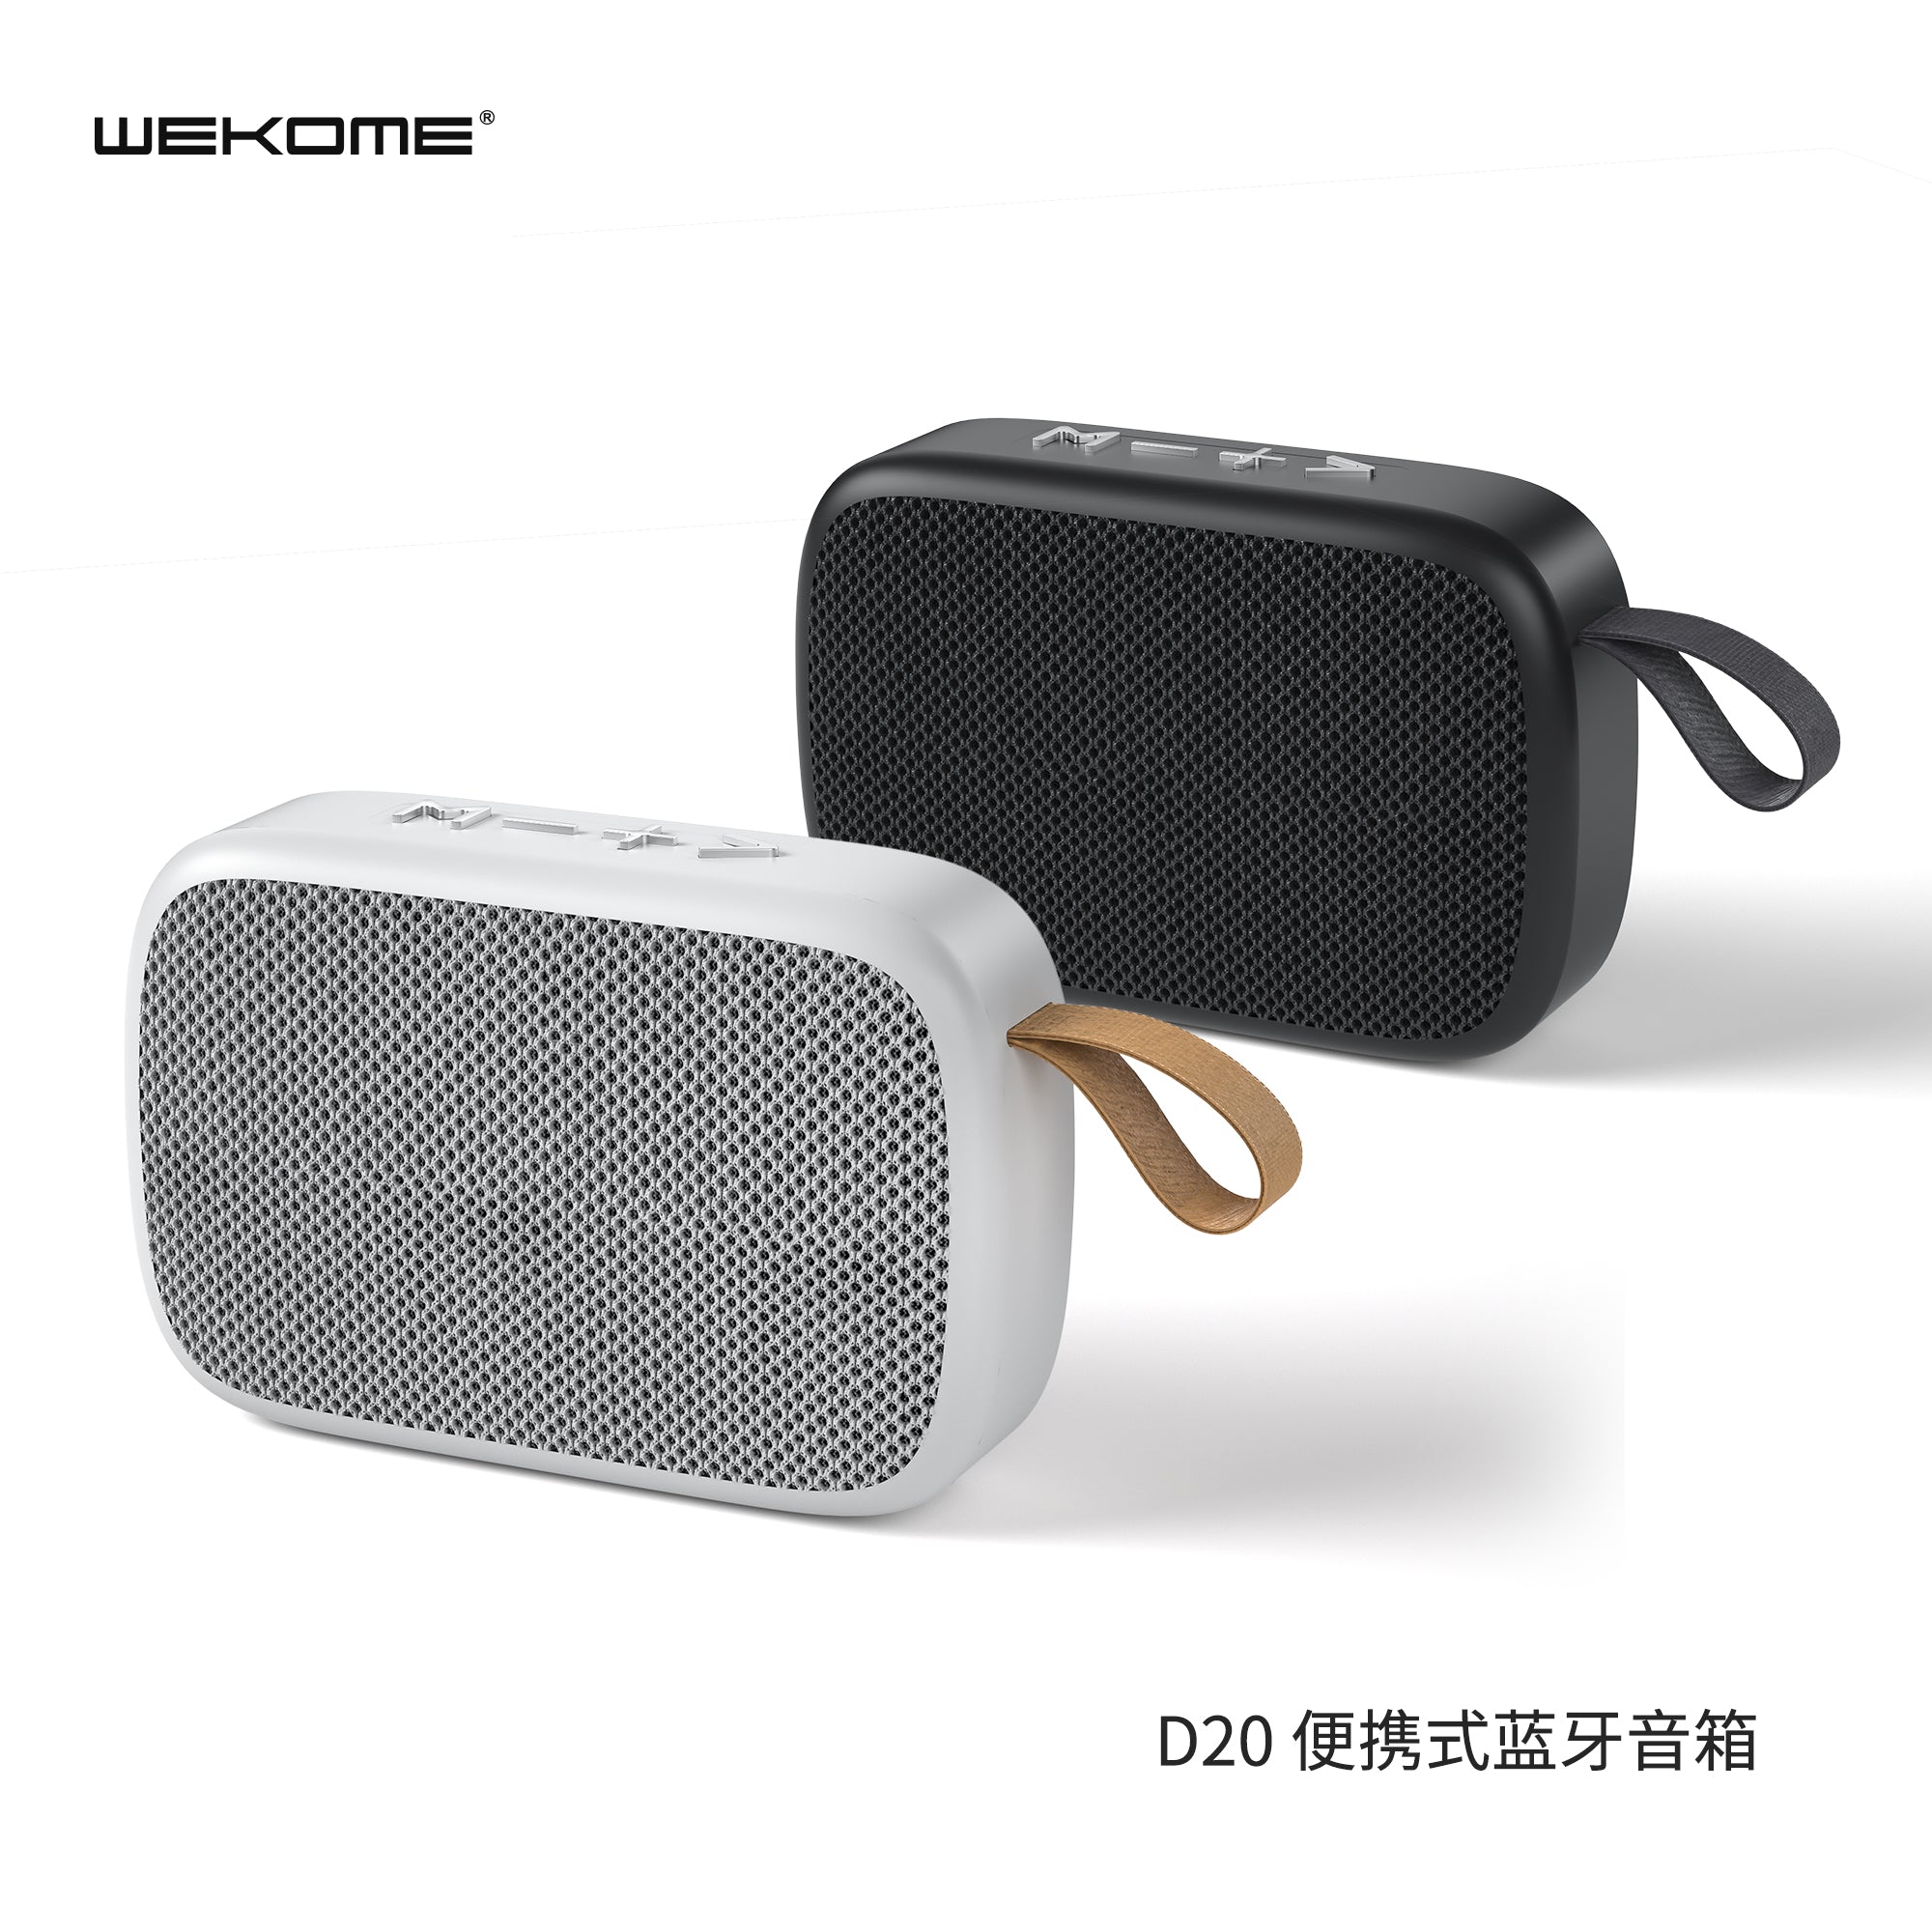 D20 Portable Wireless Speaker